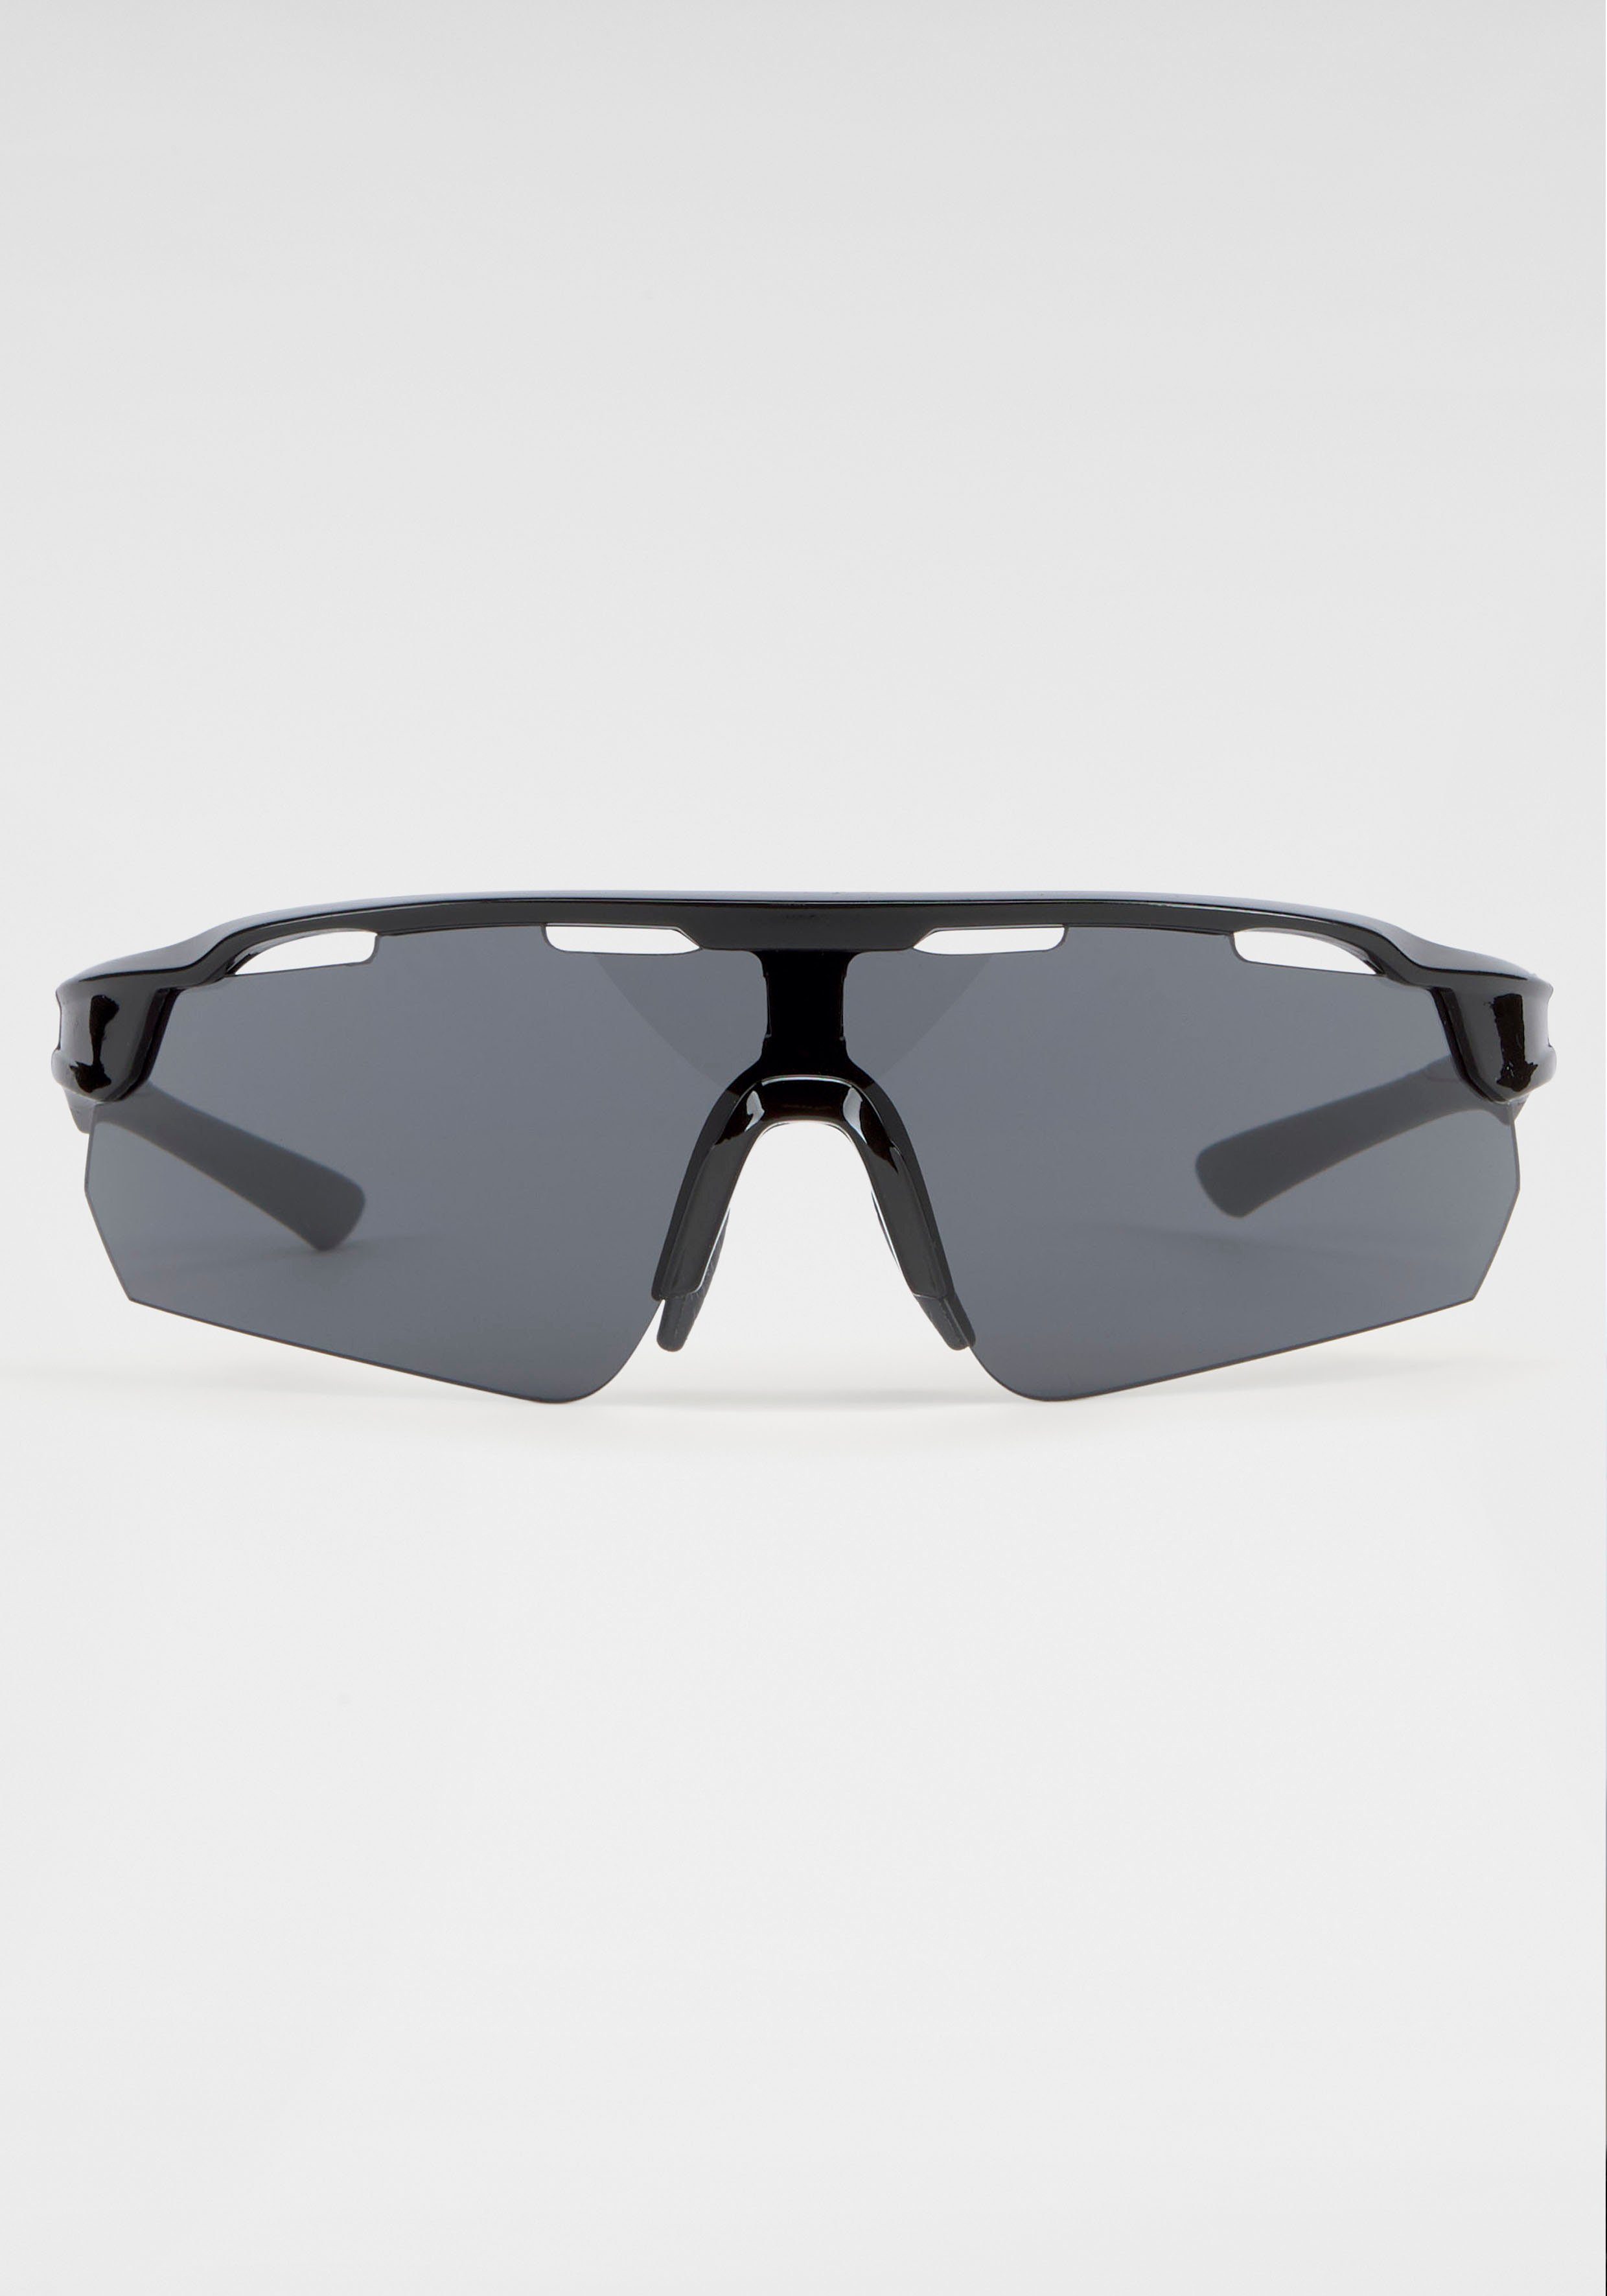 [Normaler Versandhandel im Laden] BACK IN BLACK mit Gläsern Eyewear Sonnenbrille gebogenen